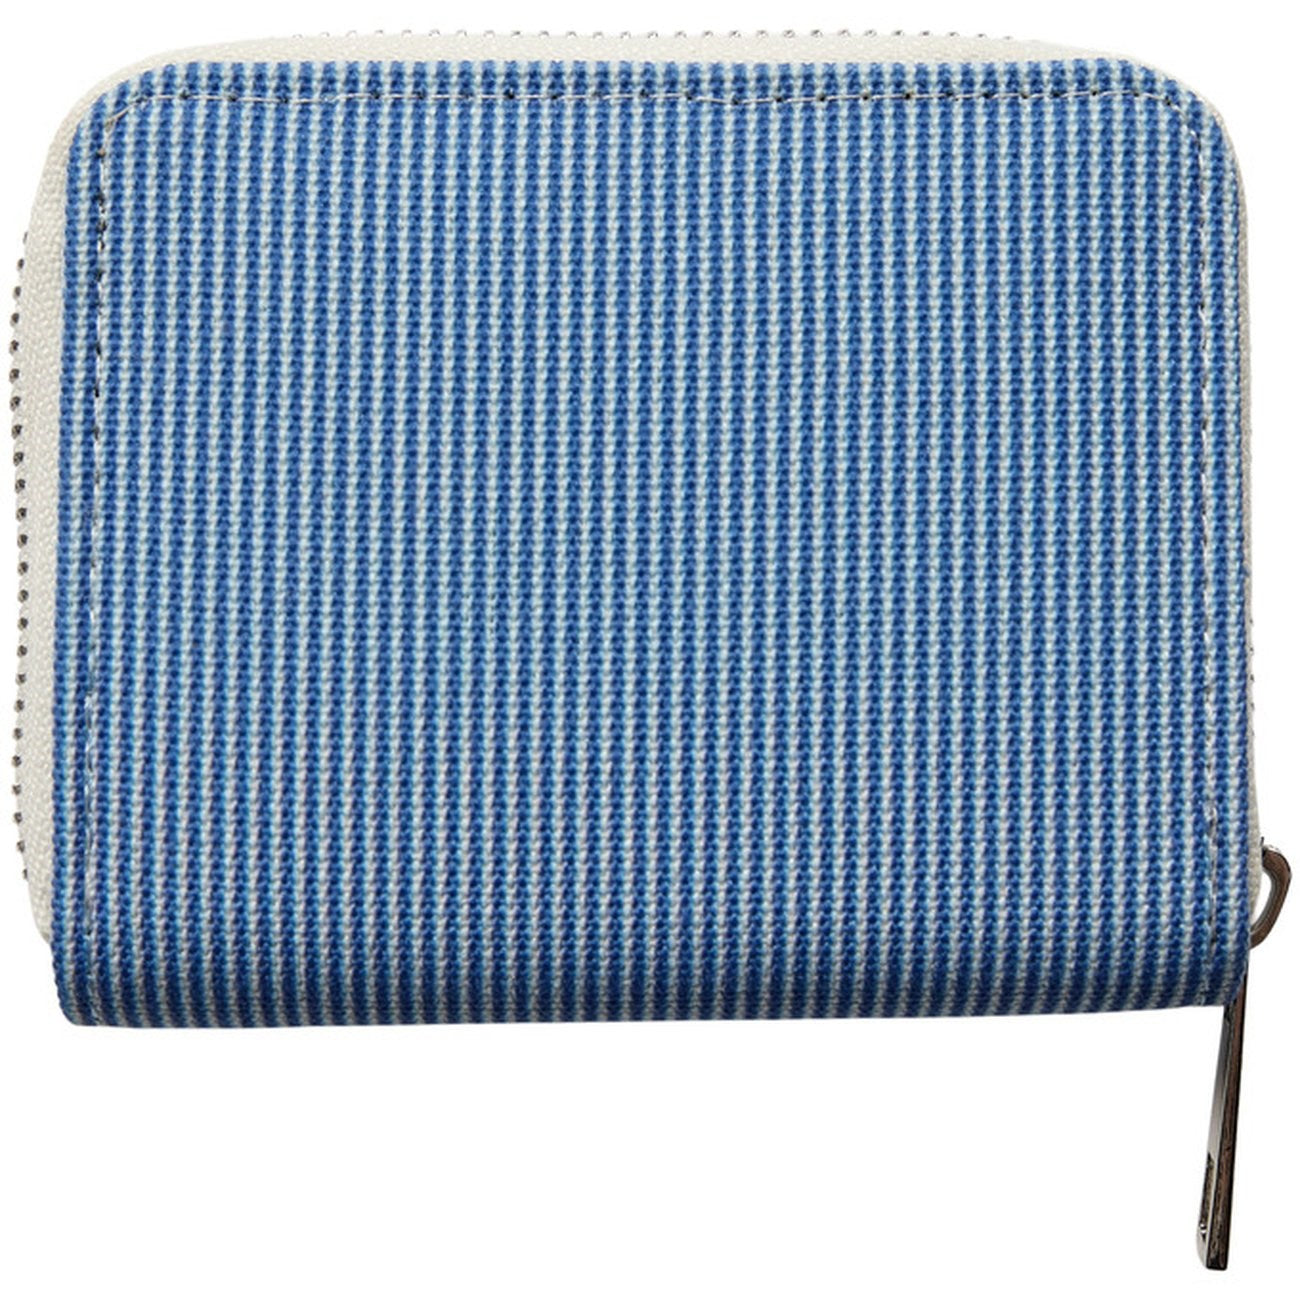 Sofie Schnoor Blue Striped Wallet 3